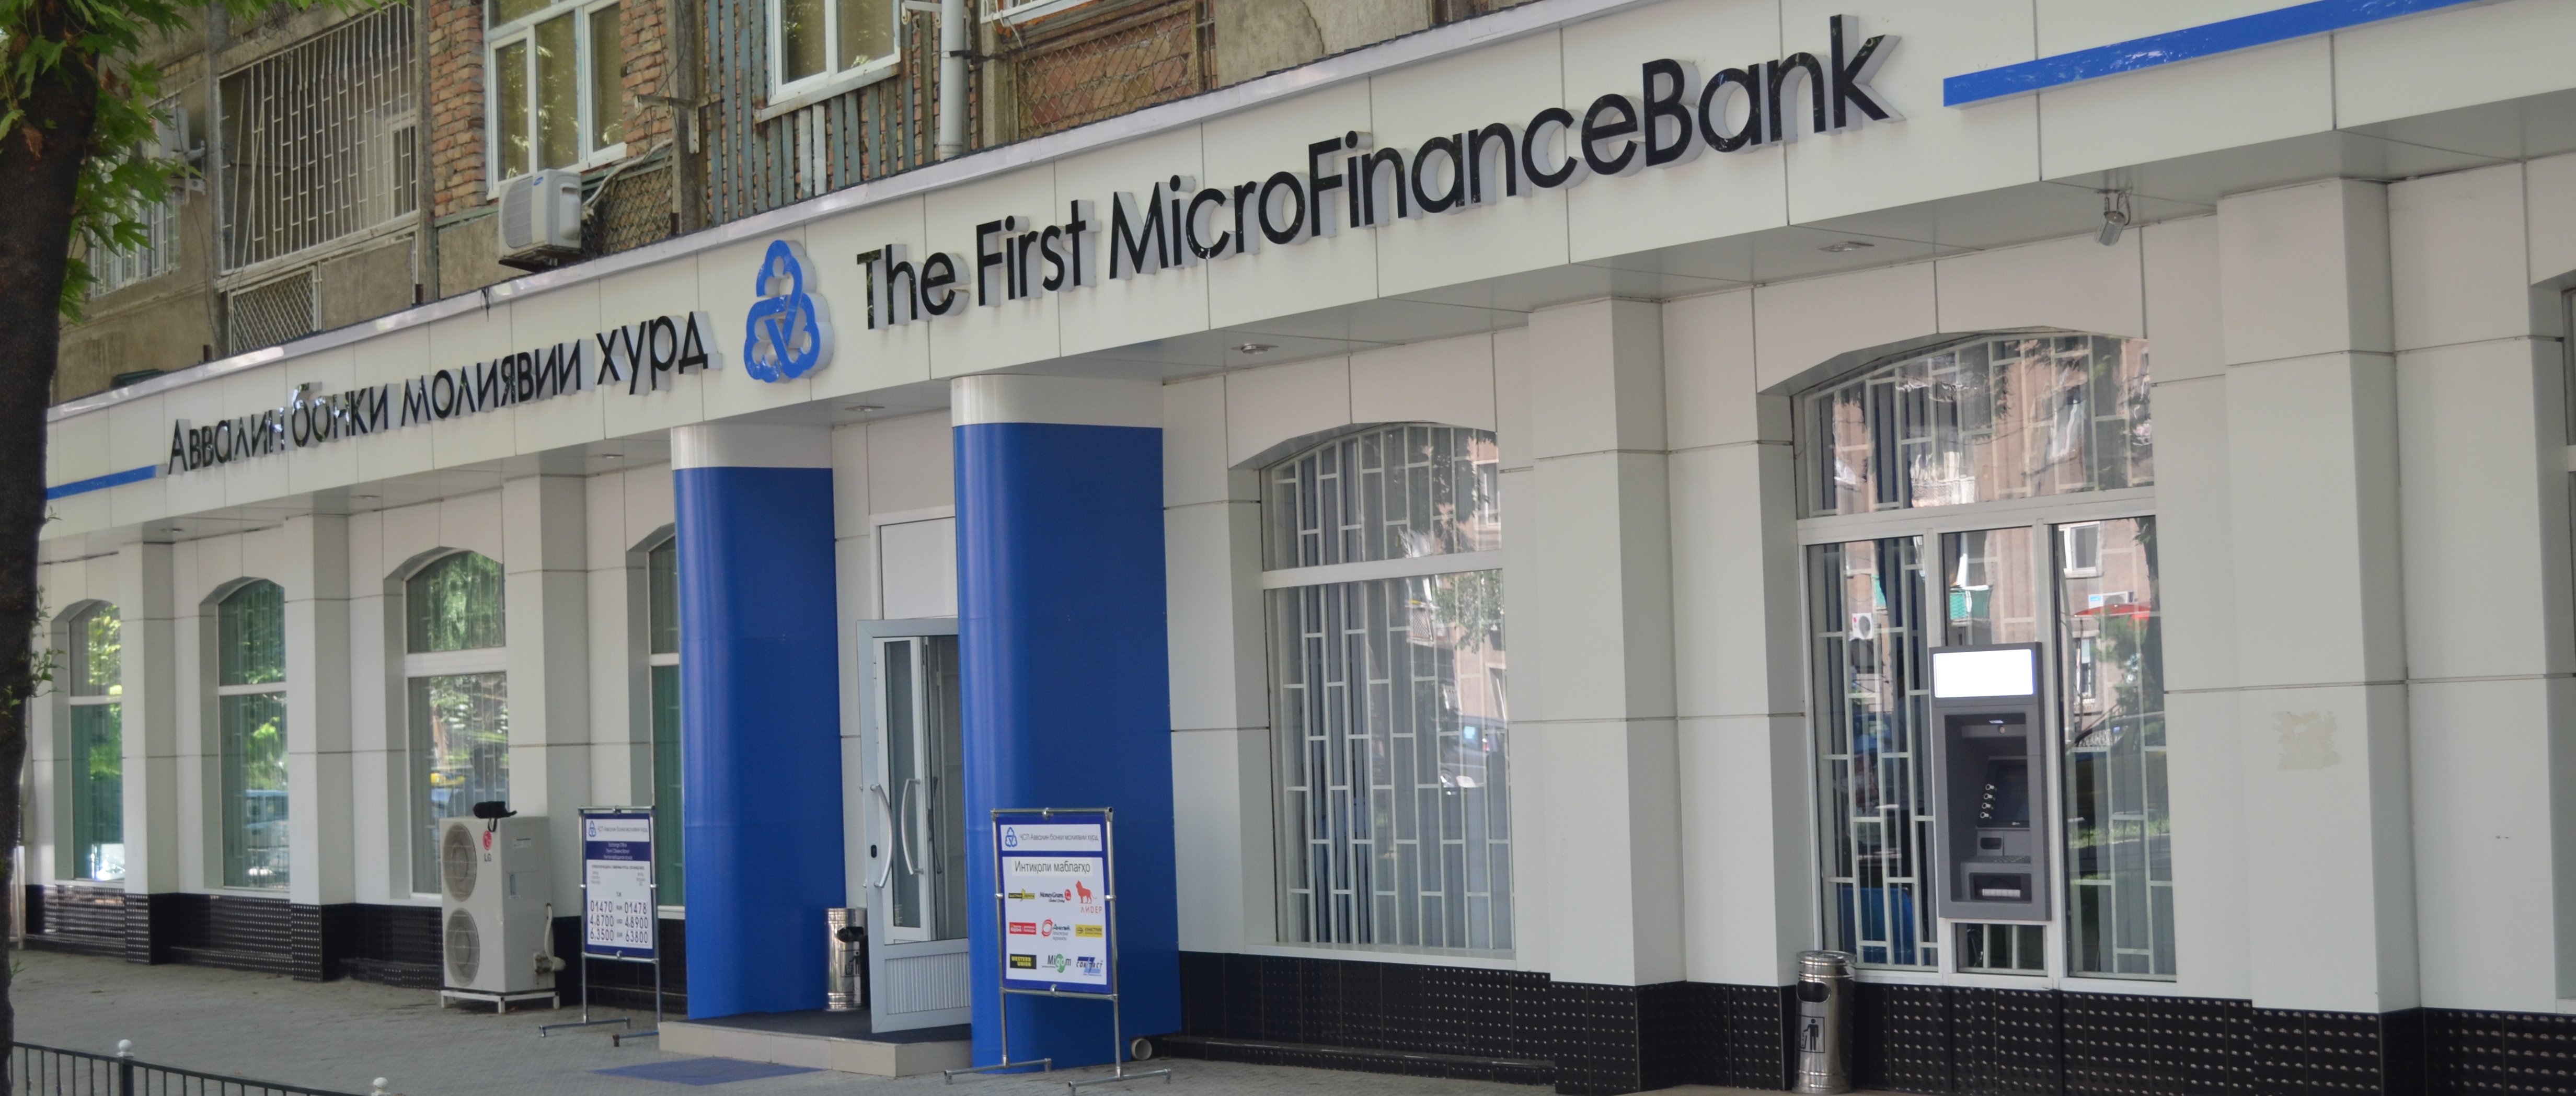 Банк таджикистан работает. Микрофинанс банк в Душанбе. Первый микрофинансовый банк Таджикистана. Название банков в Таджикистане.